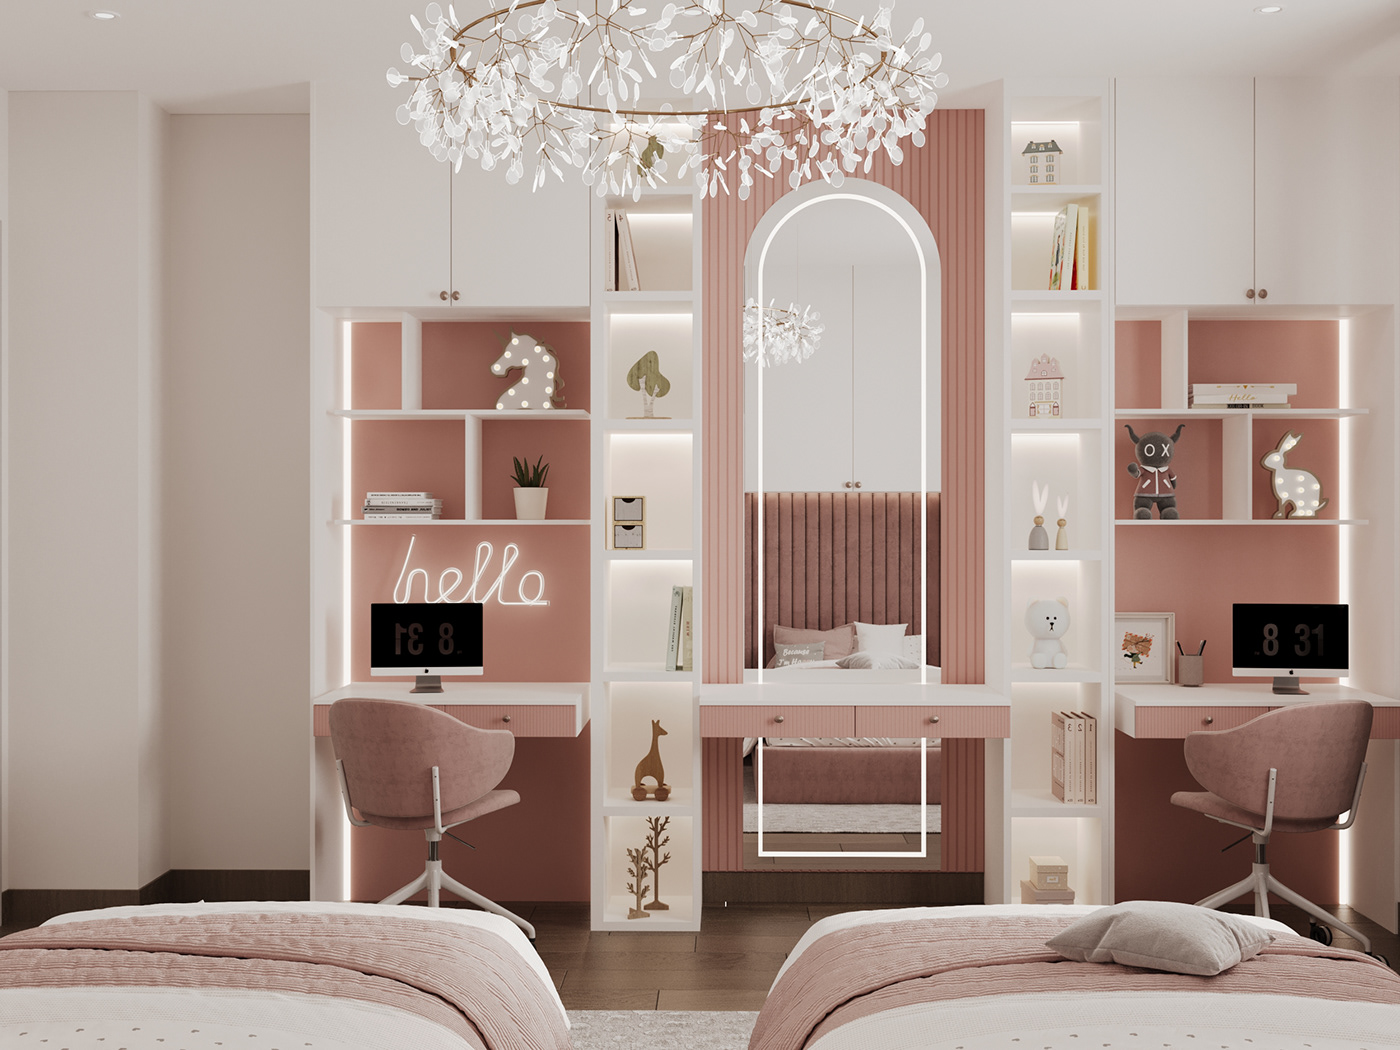 3ds max bedroom corona interior design  kidsbedroomdesign